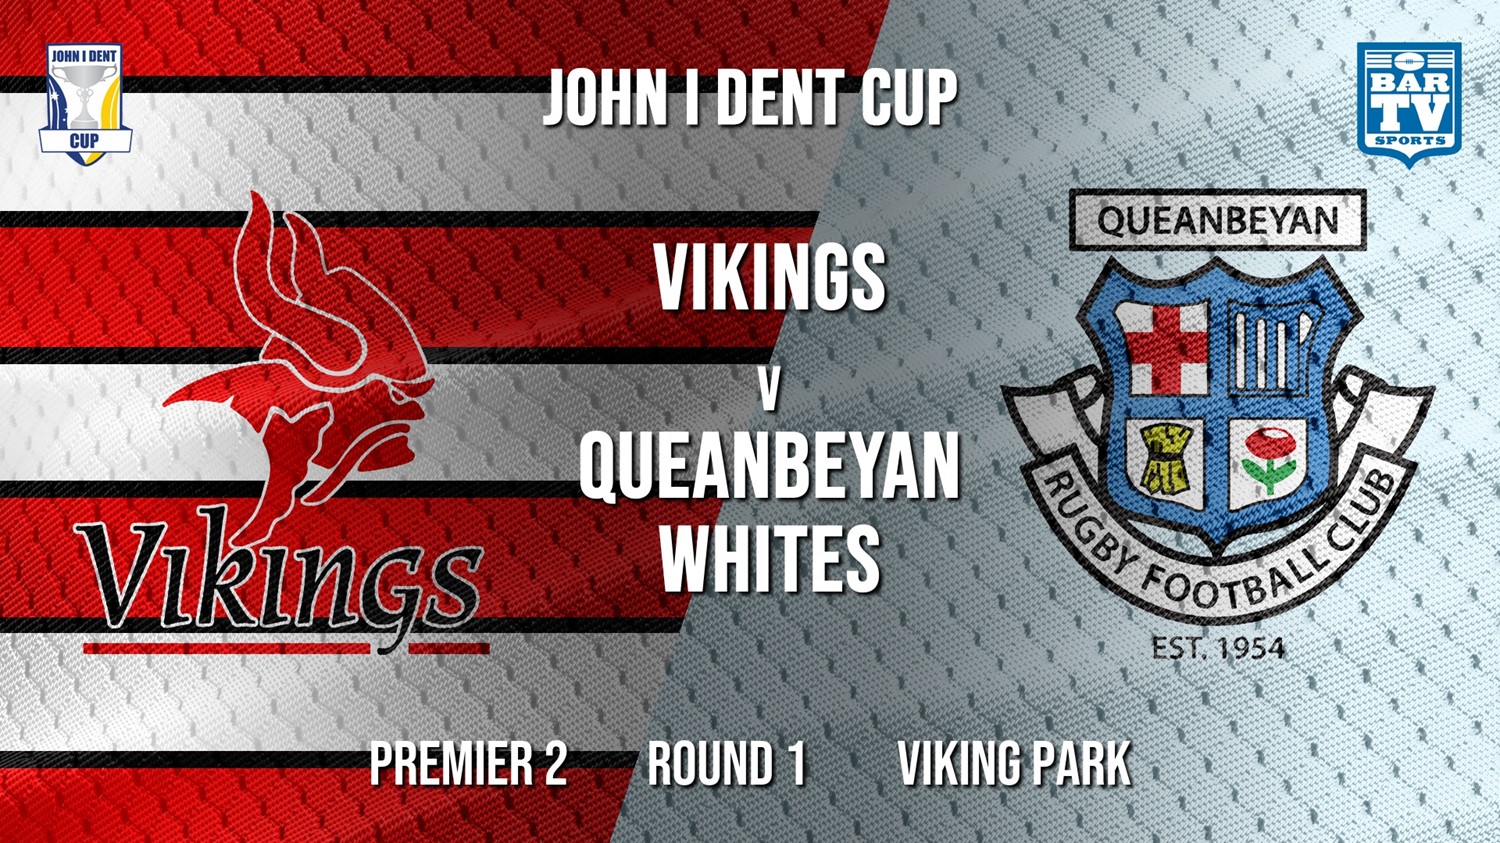 John I Dent Round 1  - Premier 2 - Tuggeranong Vikings v Queanbeyan Whites Minigame Slate Image